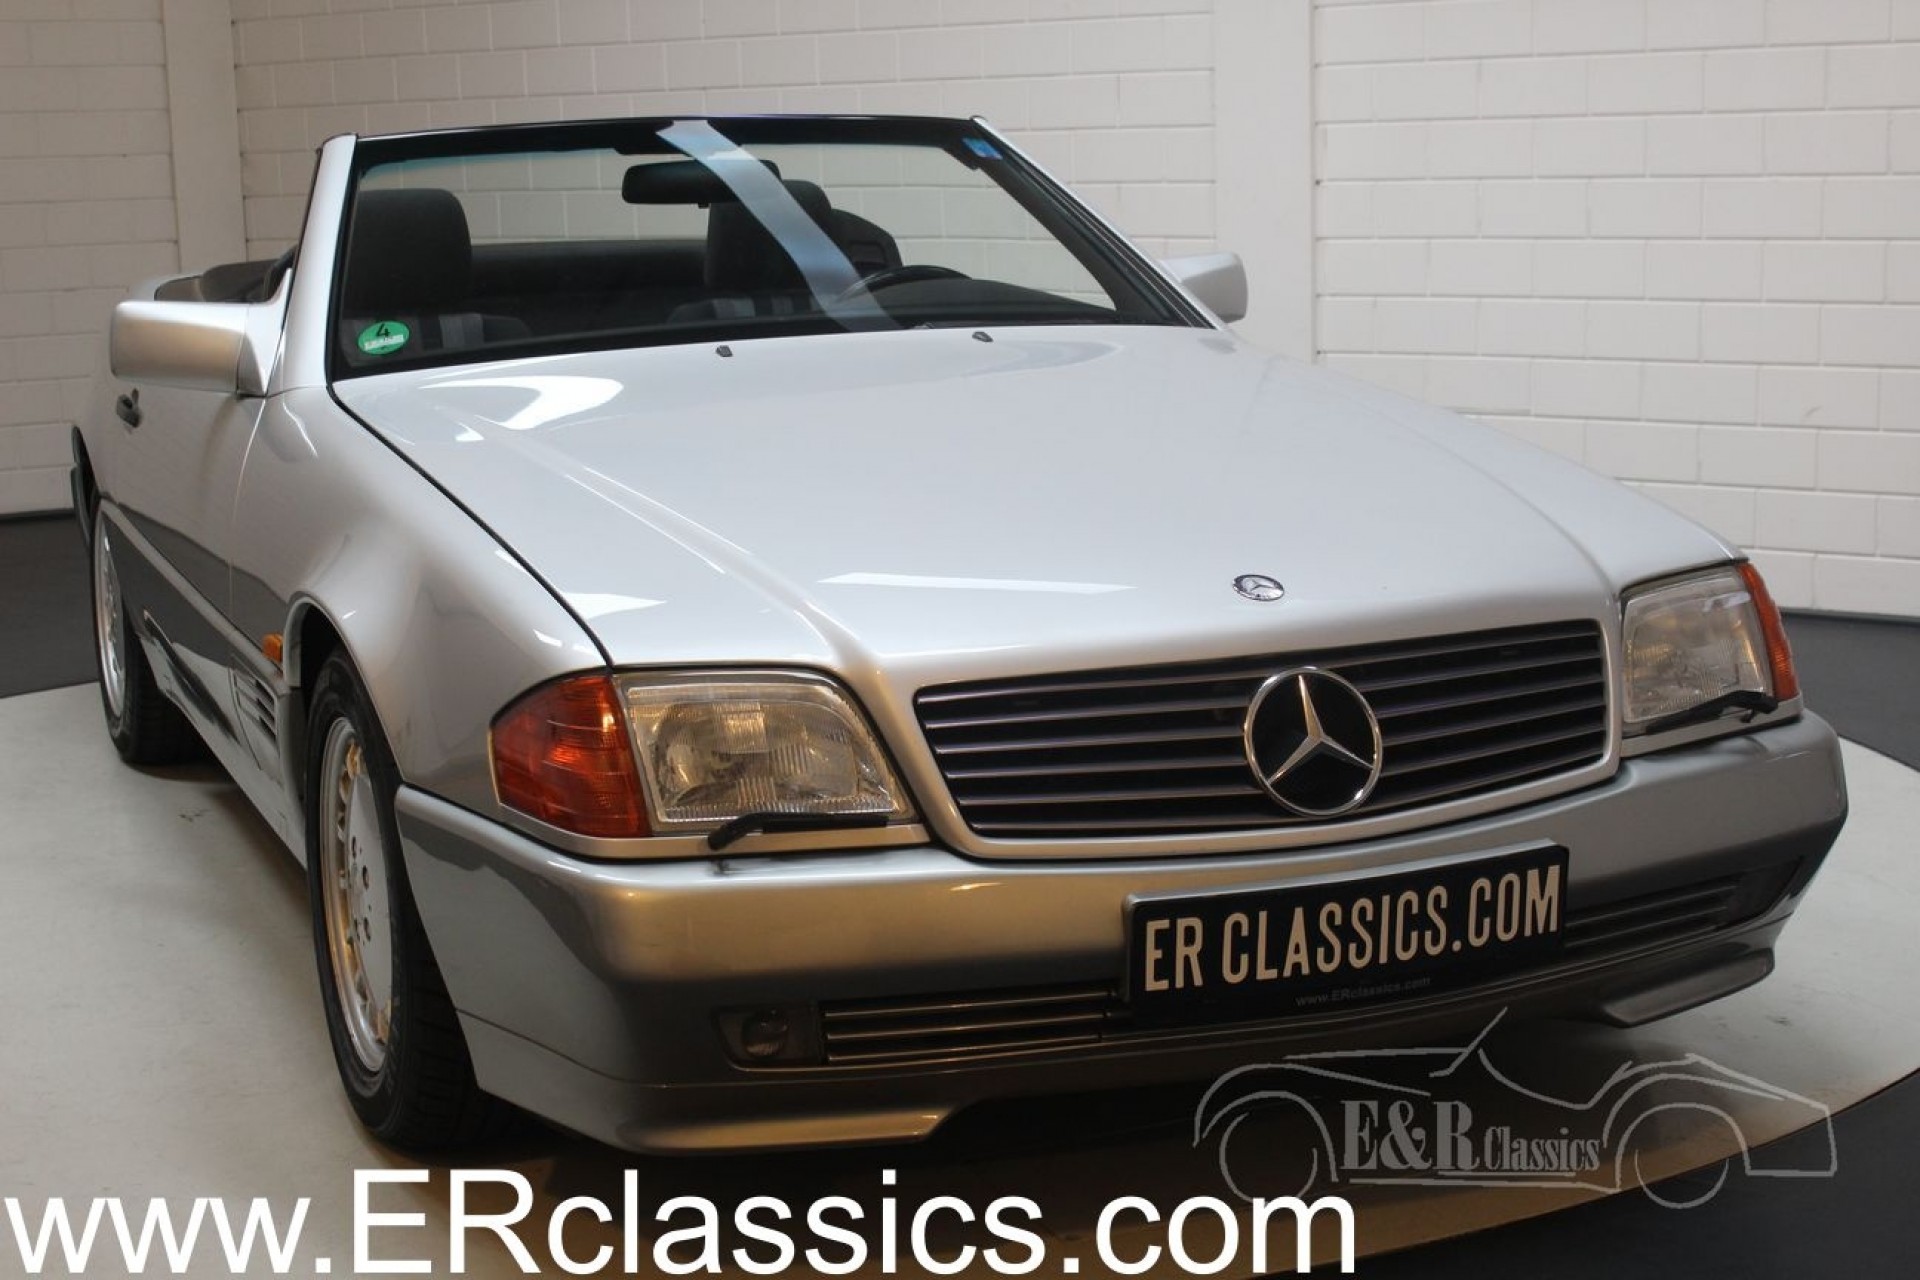 Mercedes Benz 500 Sl 1991 For Sale At Erclassics